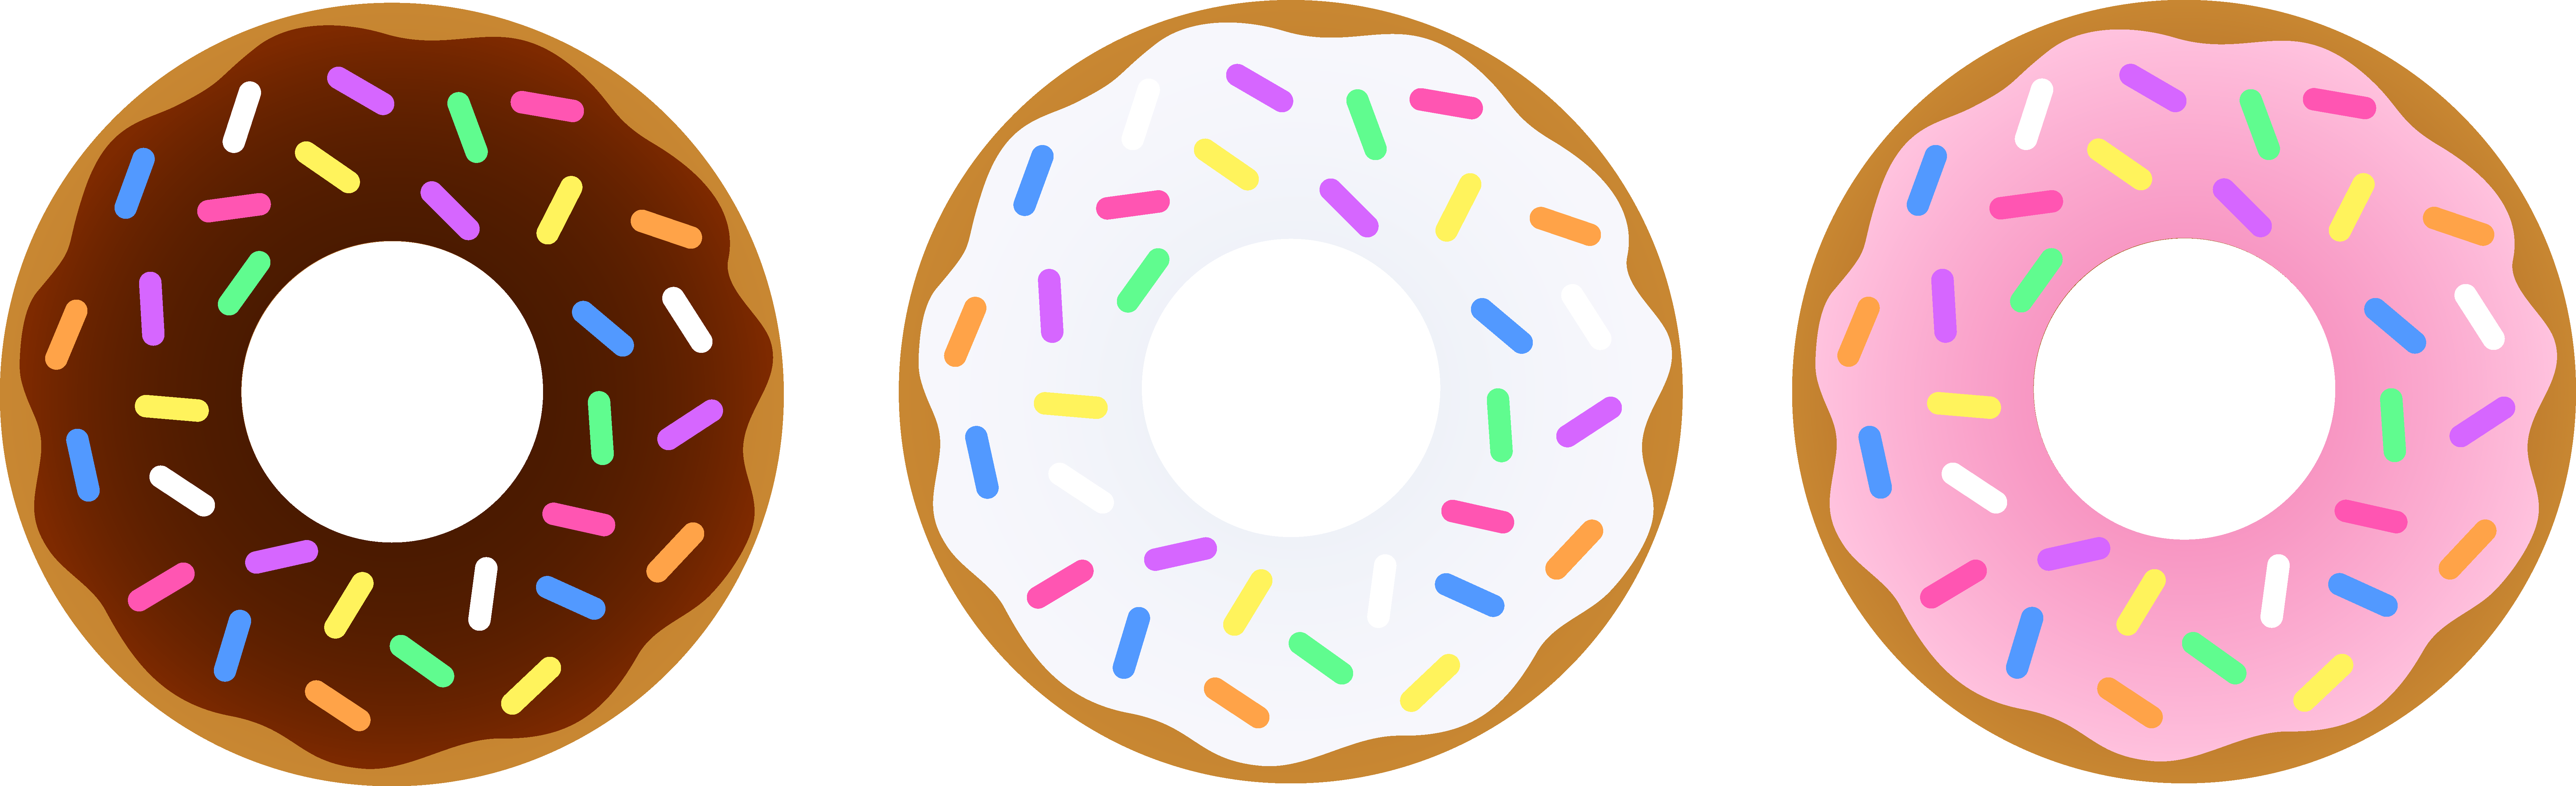 clipart donut logo - photo #21